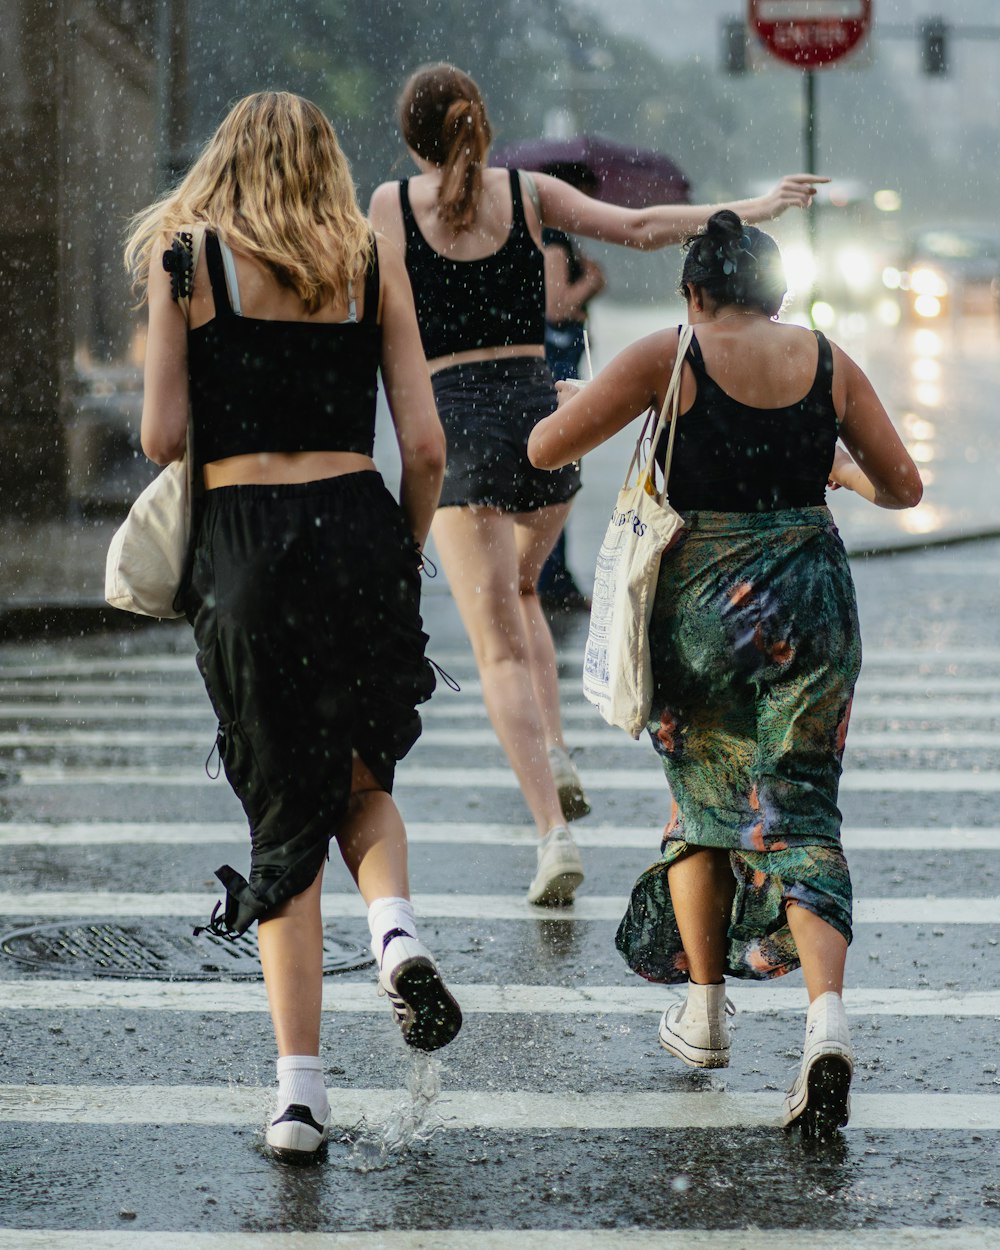 tre donne che attraversano una strada sotto la pioggia